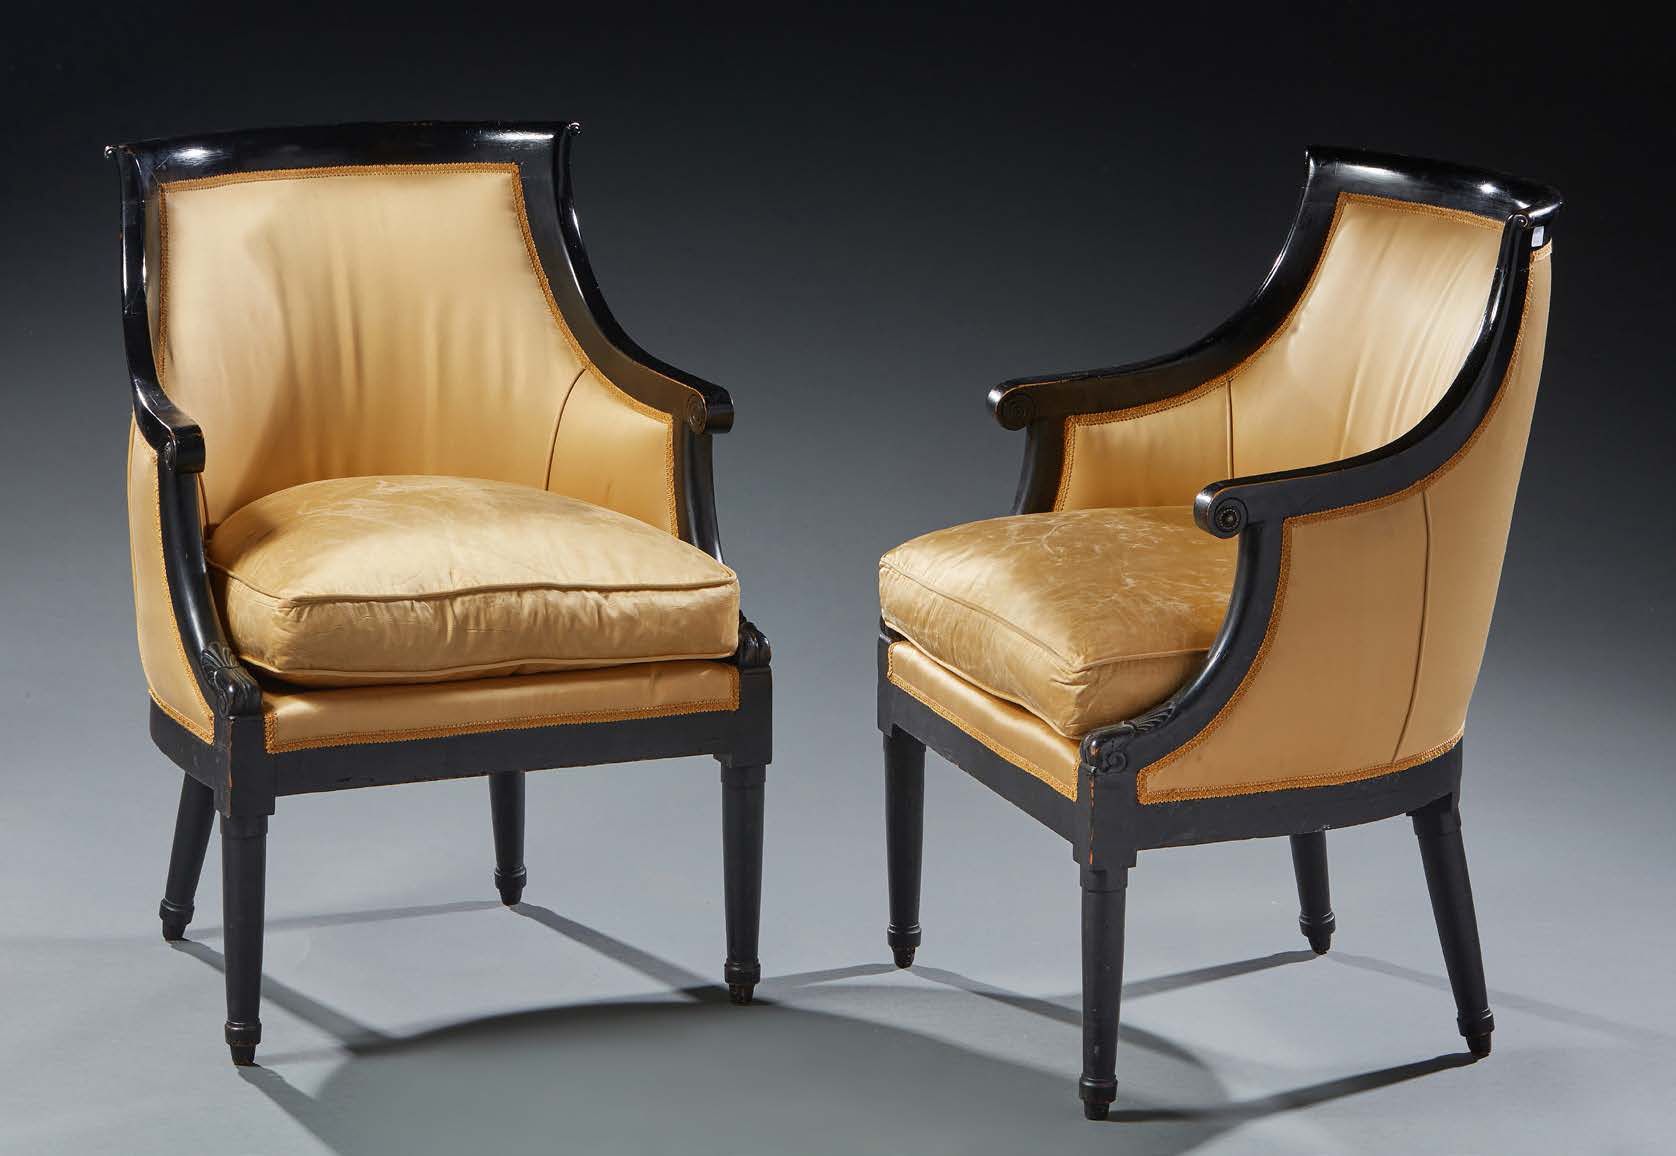 Null 一对GONDOLA椅子，熏黑和雕刻的木头，锥形前腿和马刀形后腿。
黄色装饰。
19世纪作品